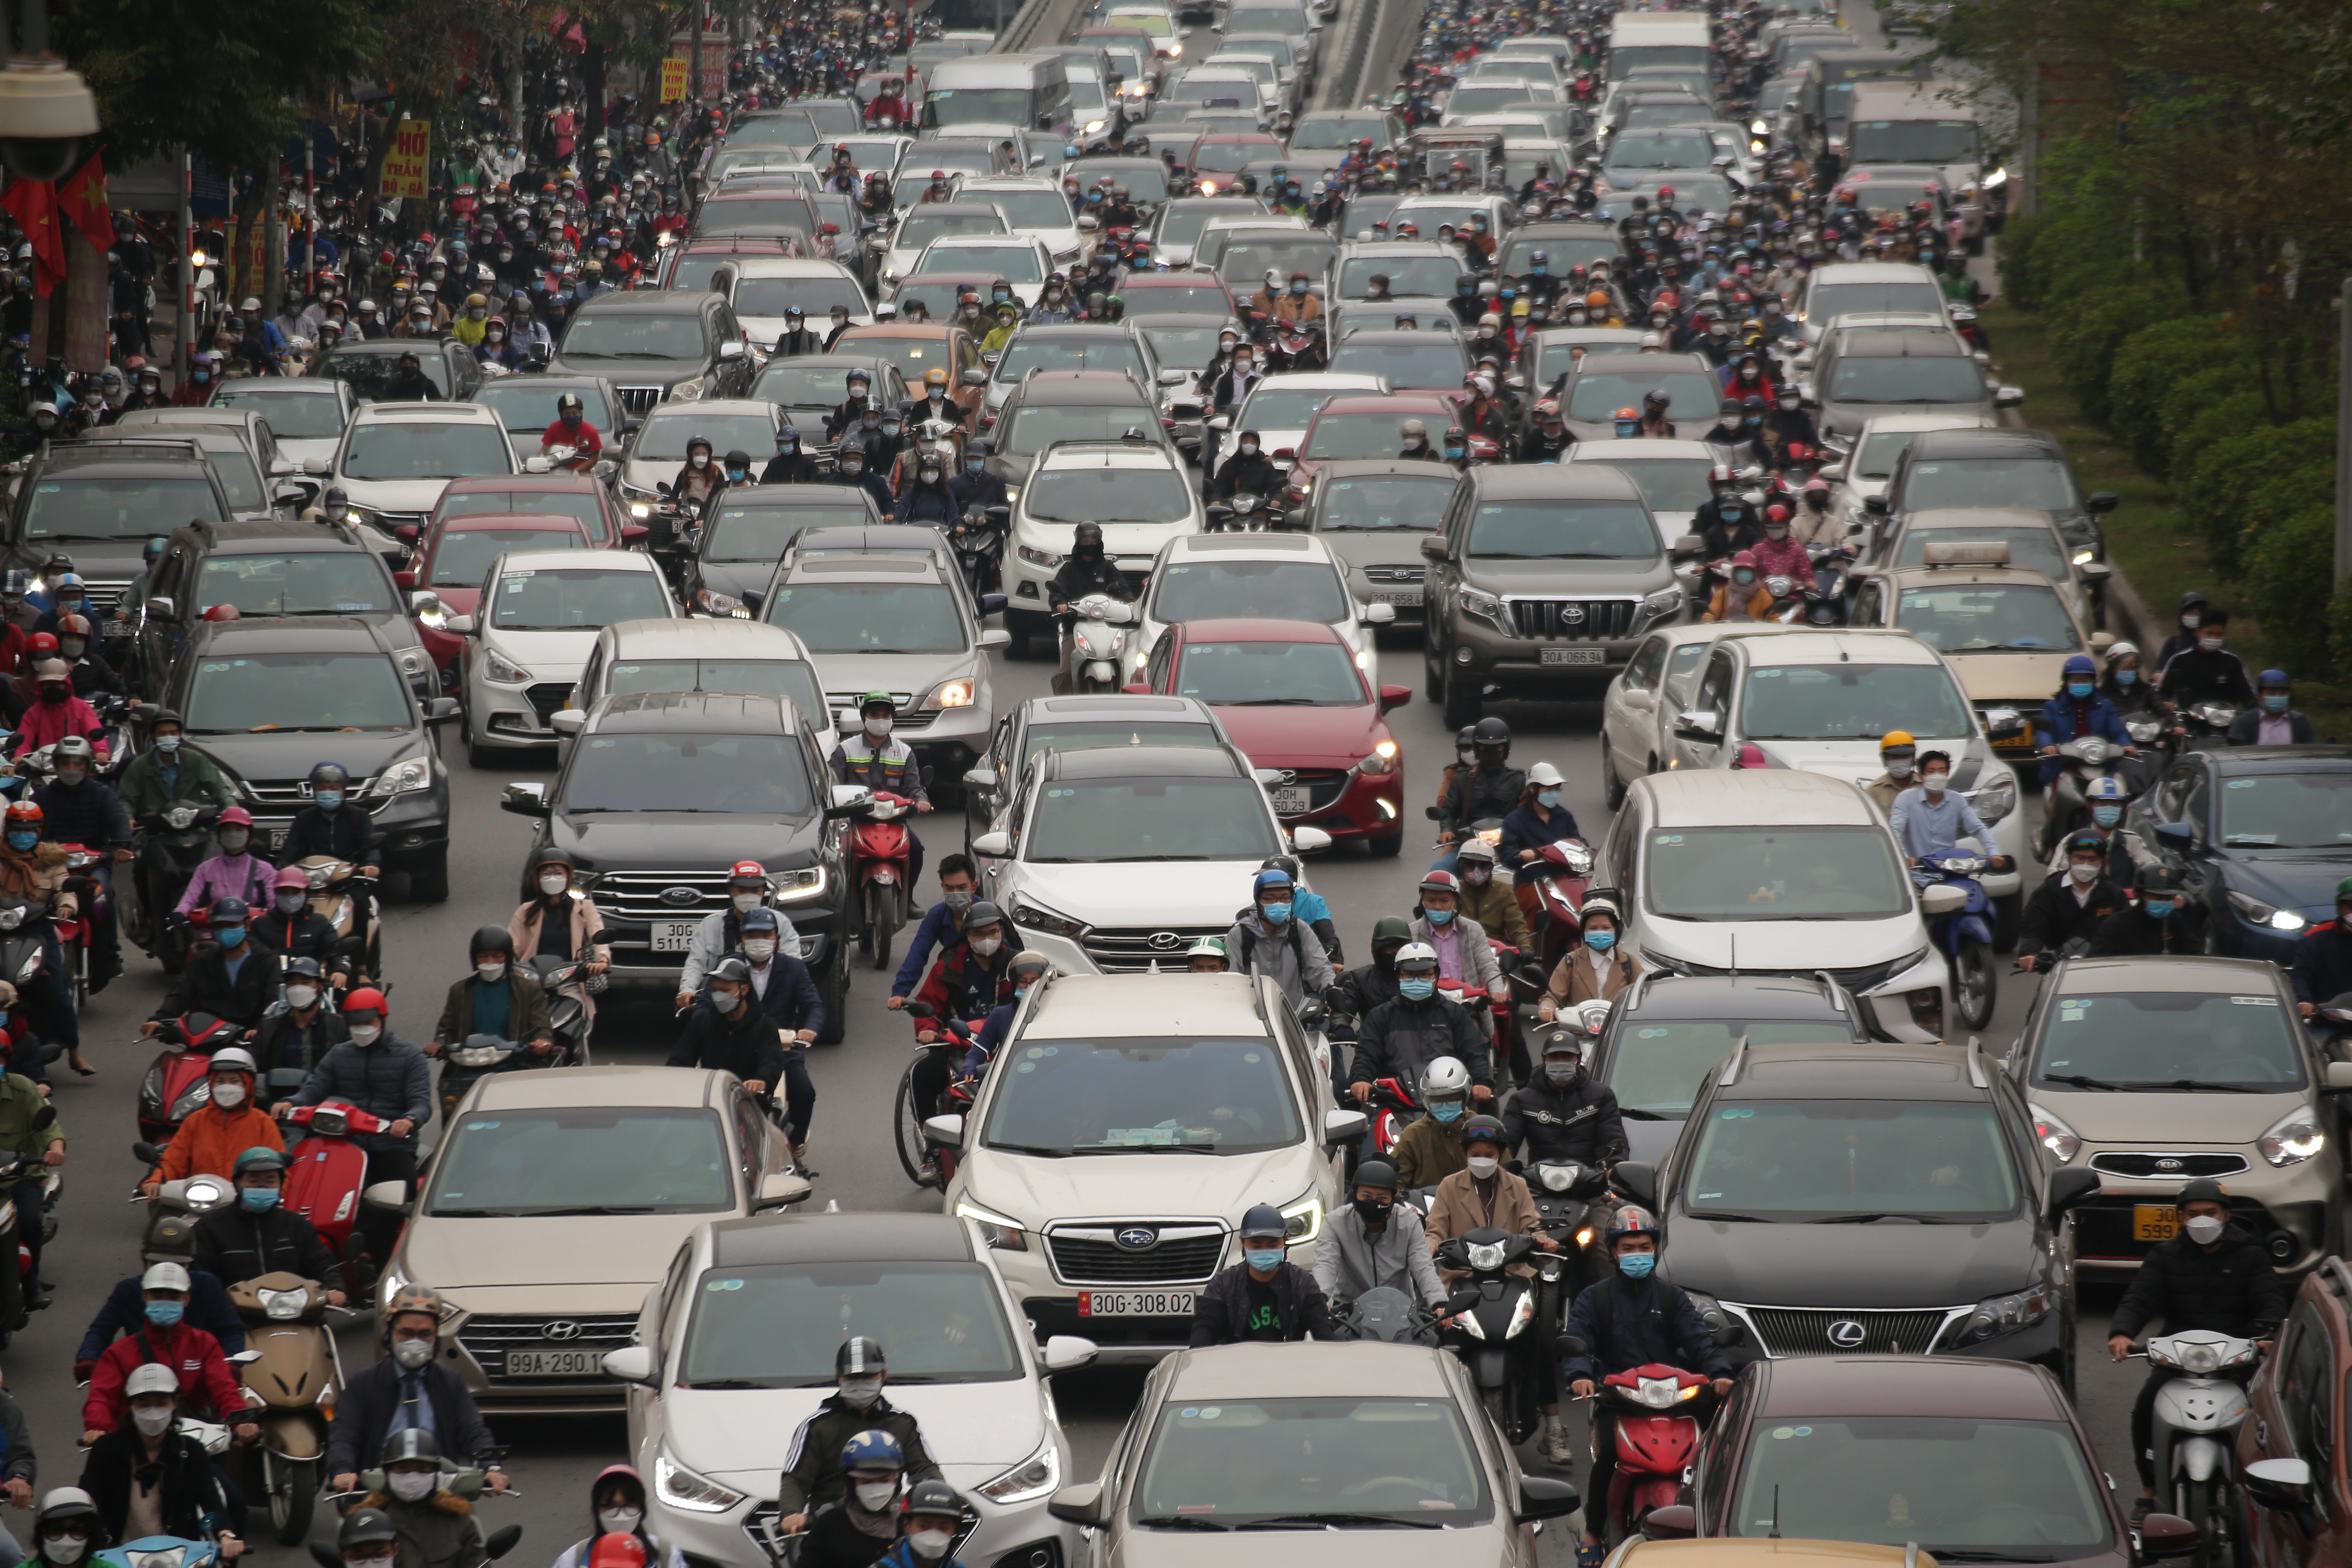 Hàng loạt các tuyến phố hướng vào trung tâm thành phố Hà Nội đều trong cảnh ùn tắc kéo dài do lượng phương tiện tham gia giao thông cùng một thời điểm khá lớn.